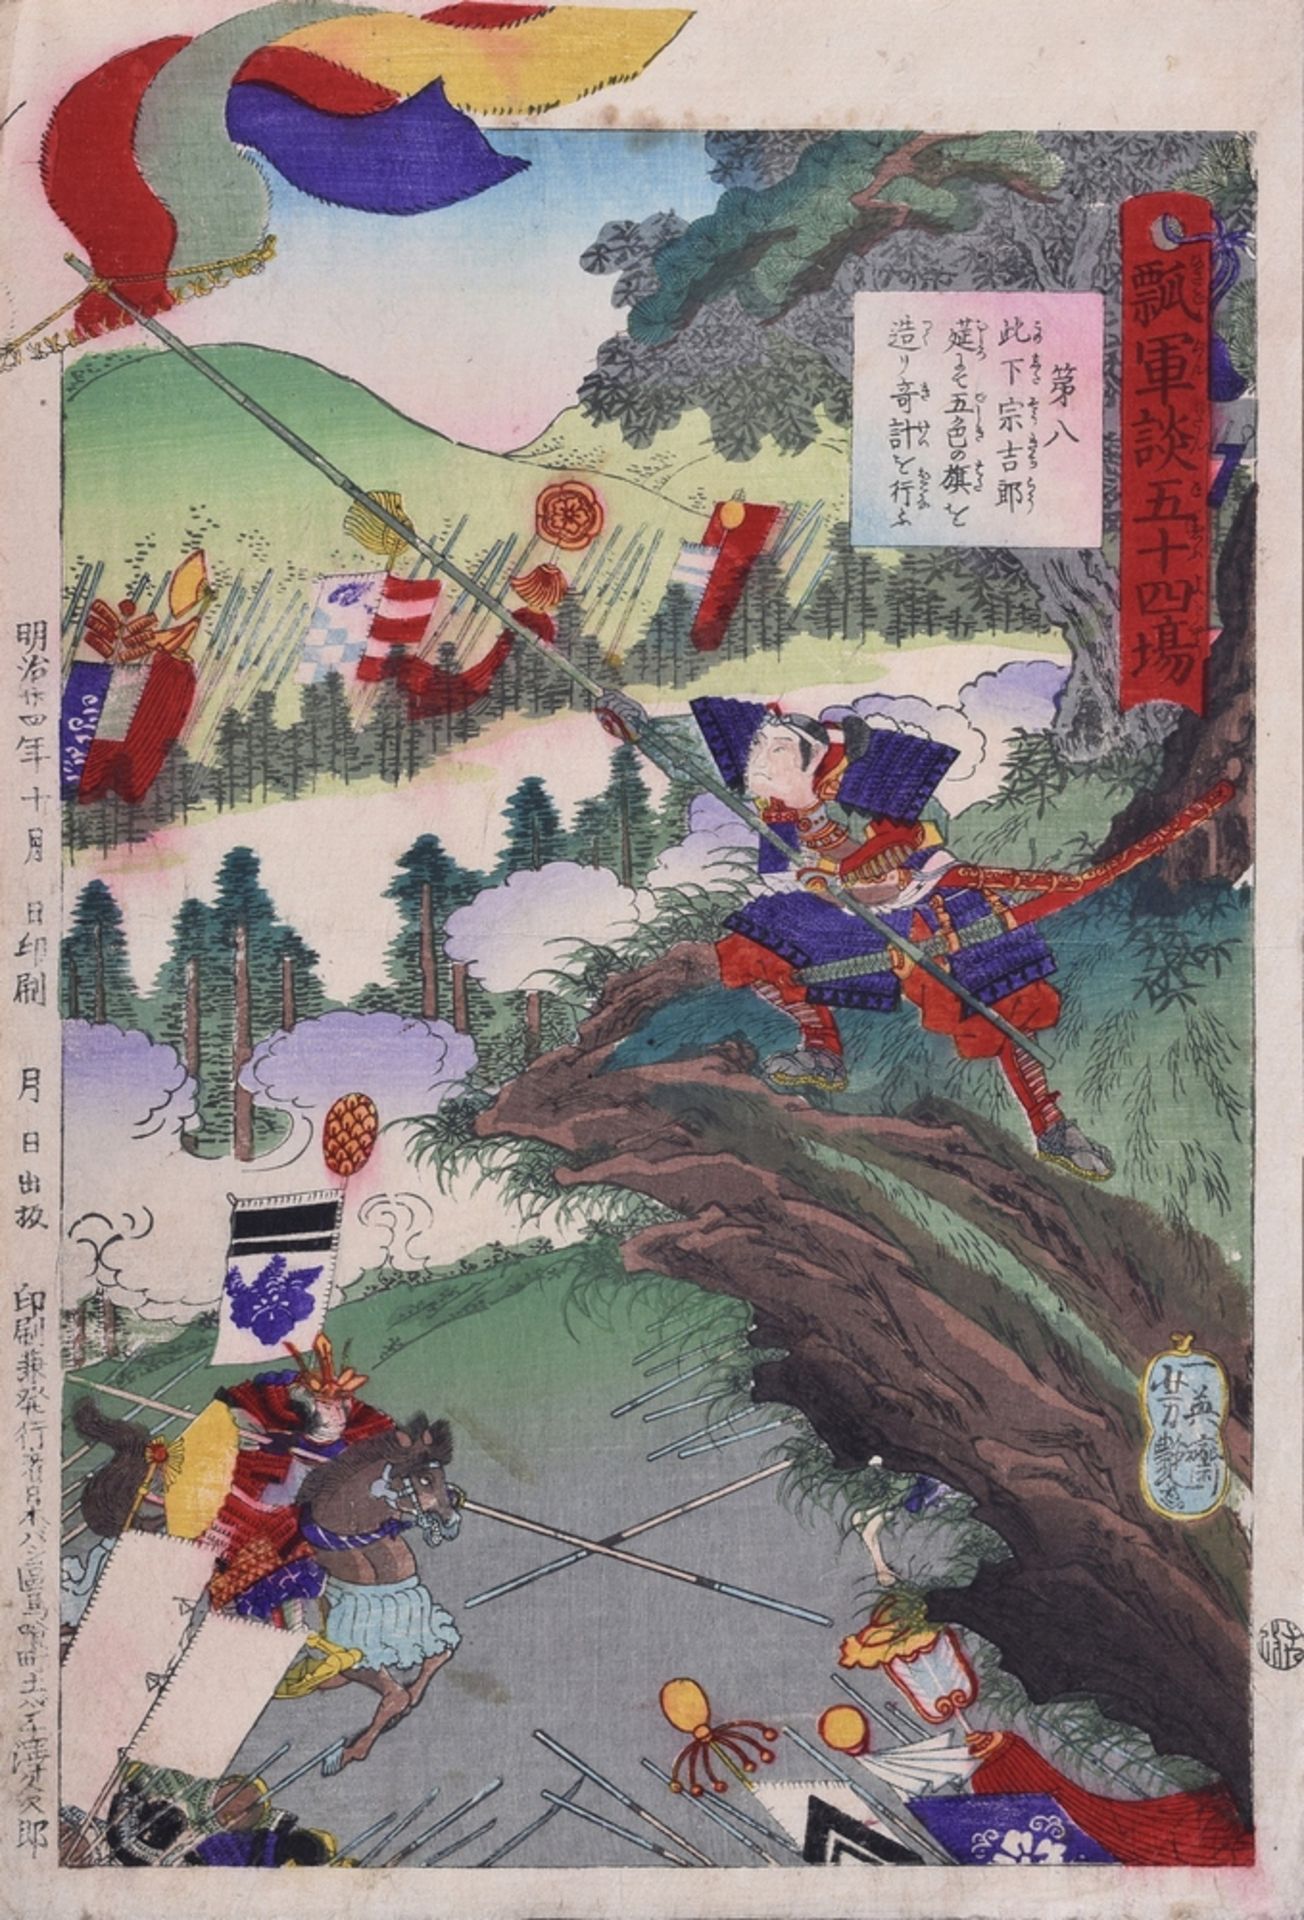 4 Diverse Yoshitsuya, Ichieisai (1822-1866) "Schlachtenszenen" aus einer Serie von 54 Blättern " - Image 8 of 8